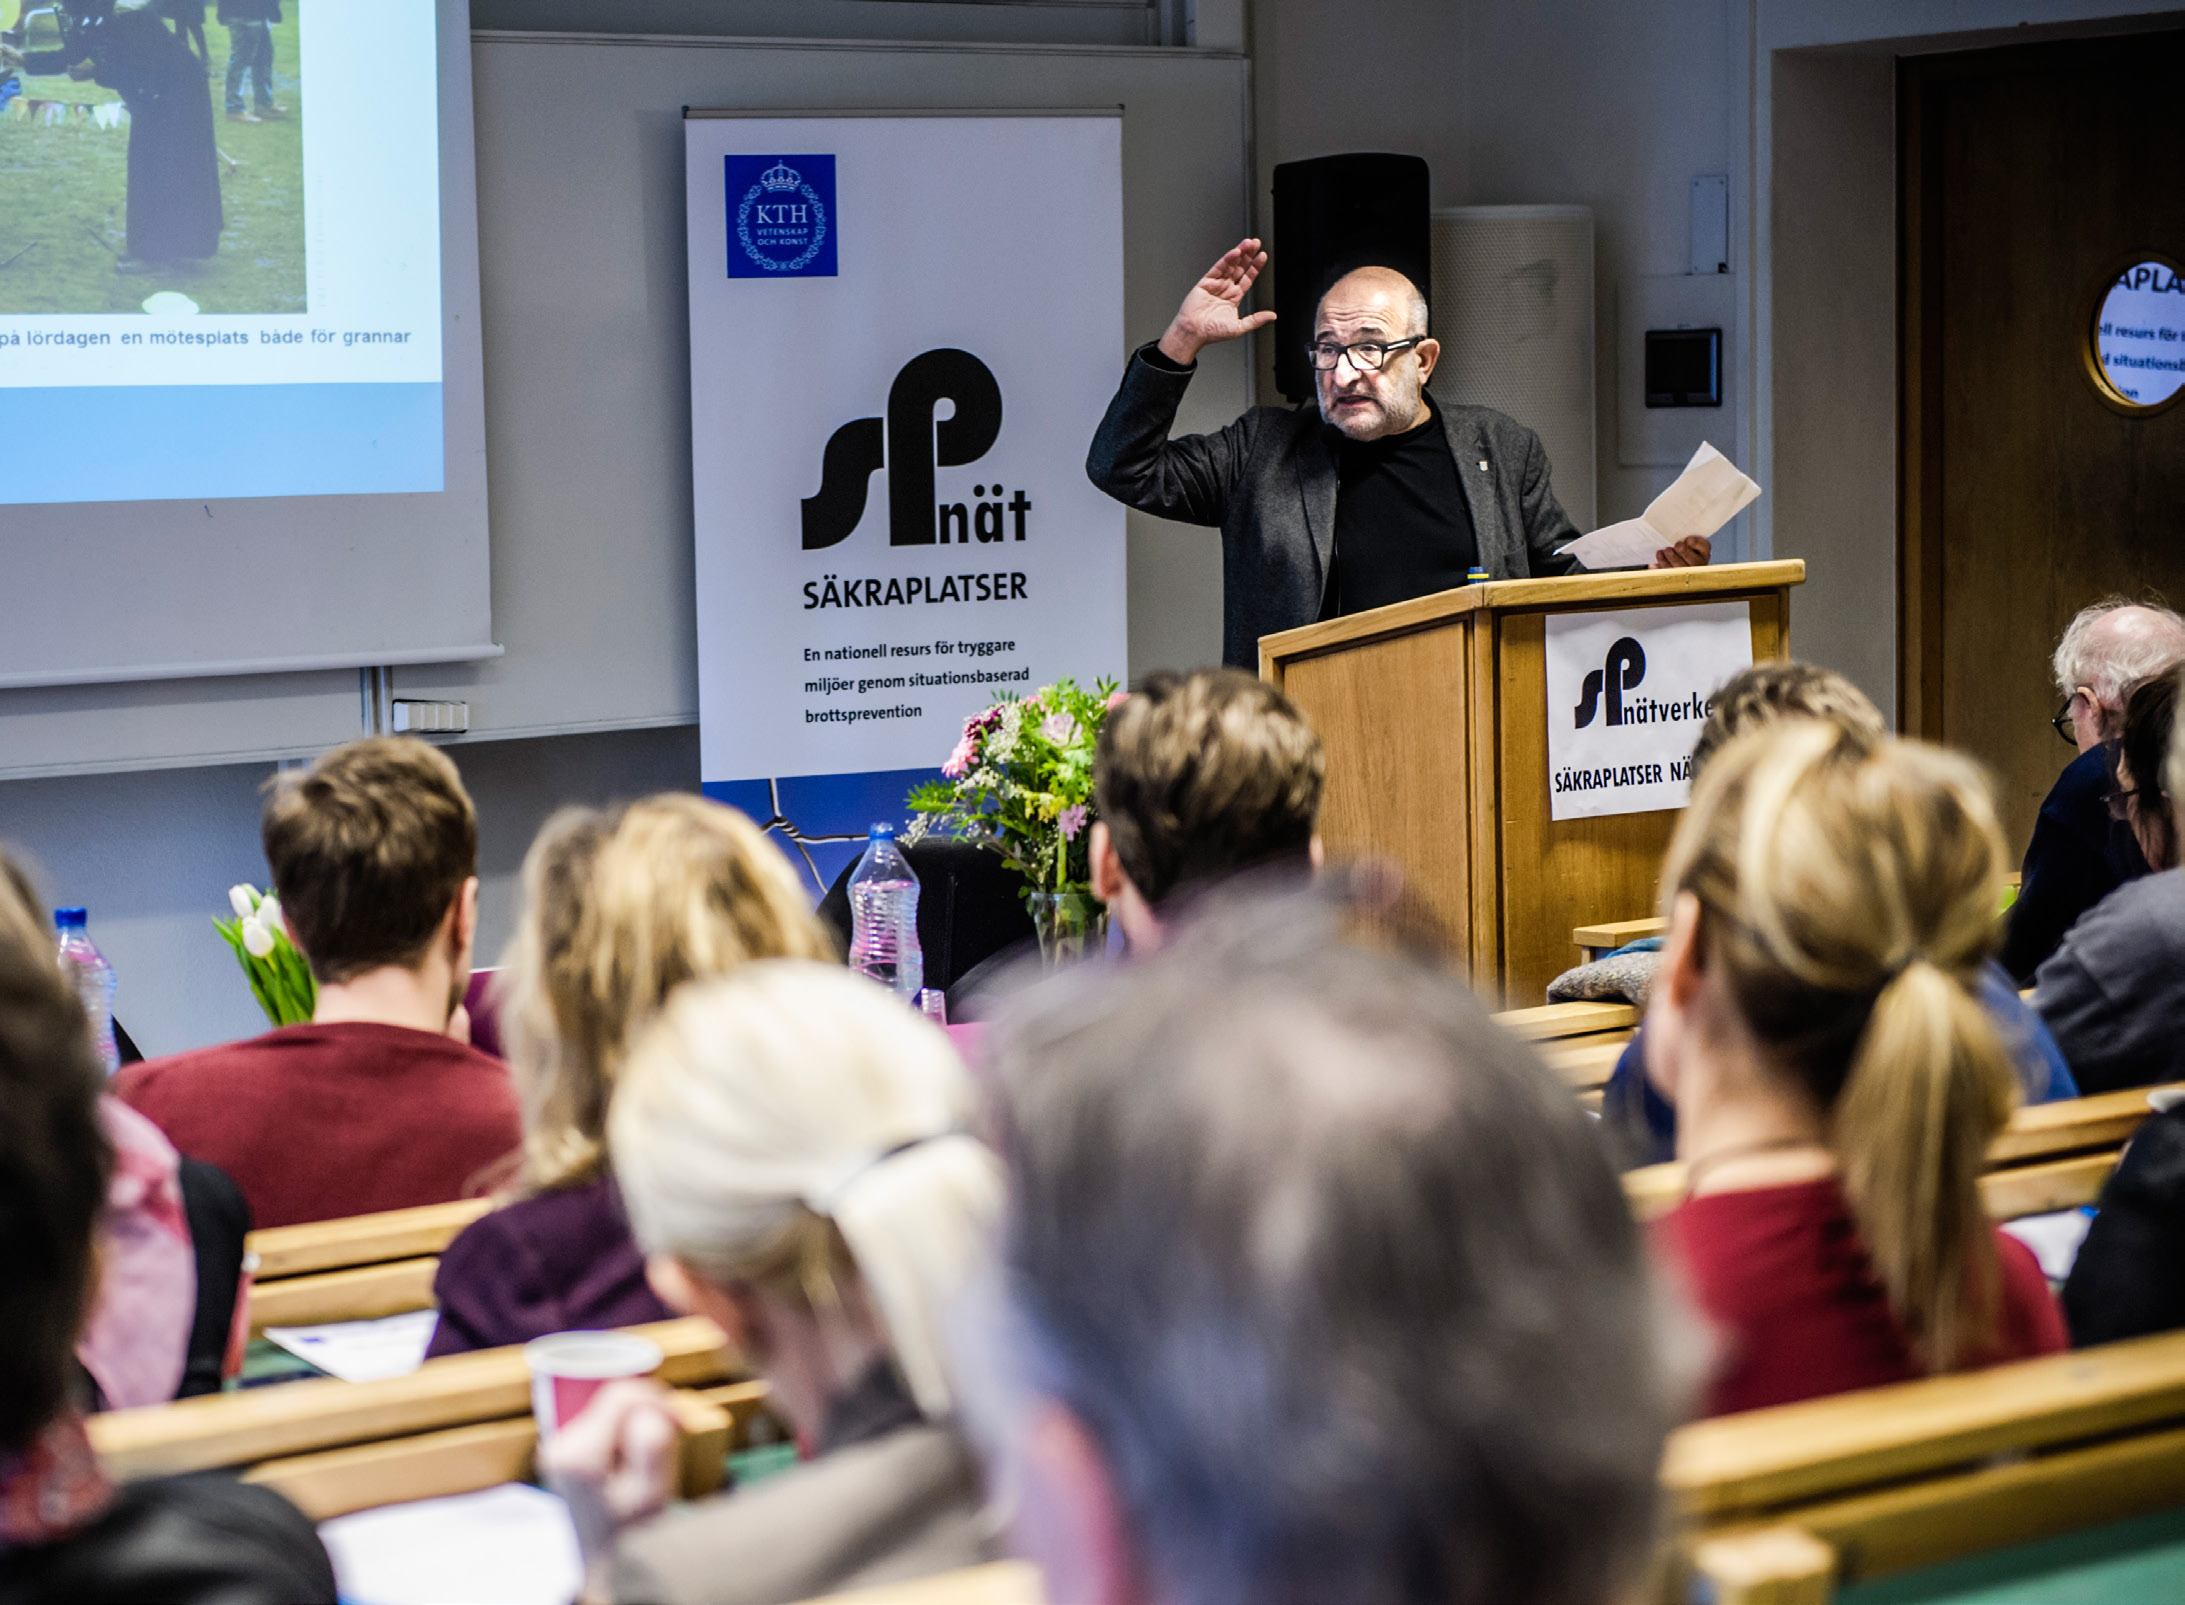 Jerzy Sarnecki är professor i kriminologi på SU och har även varit involverat i undervisning i Gävle sedan 2012 och sedan 2015, på Södertorn högskola.